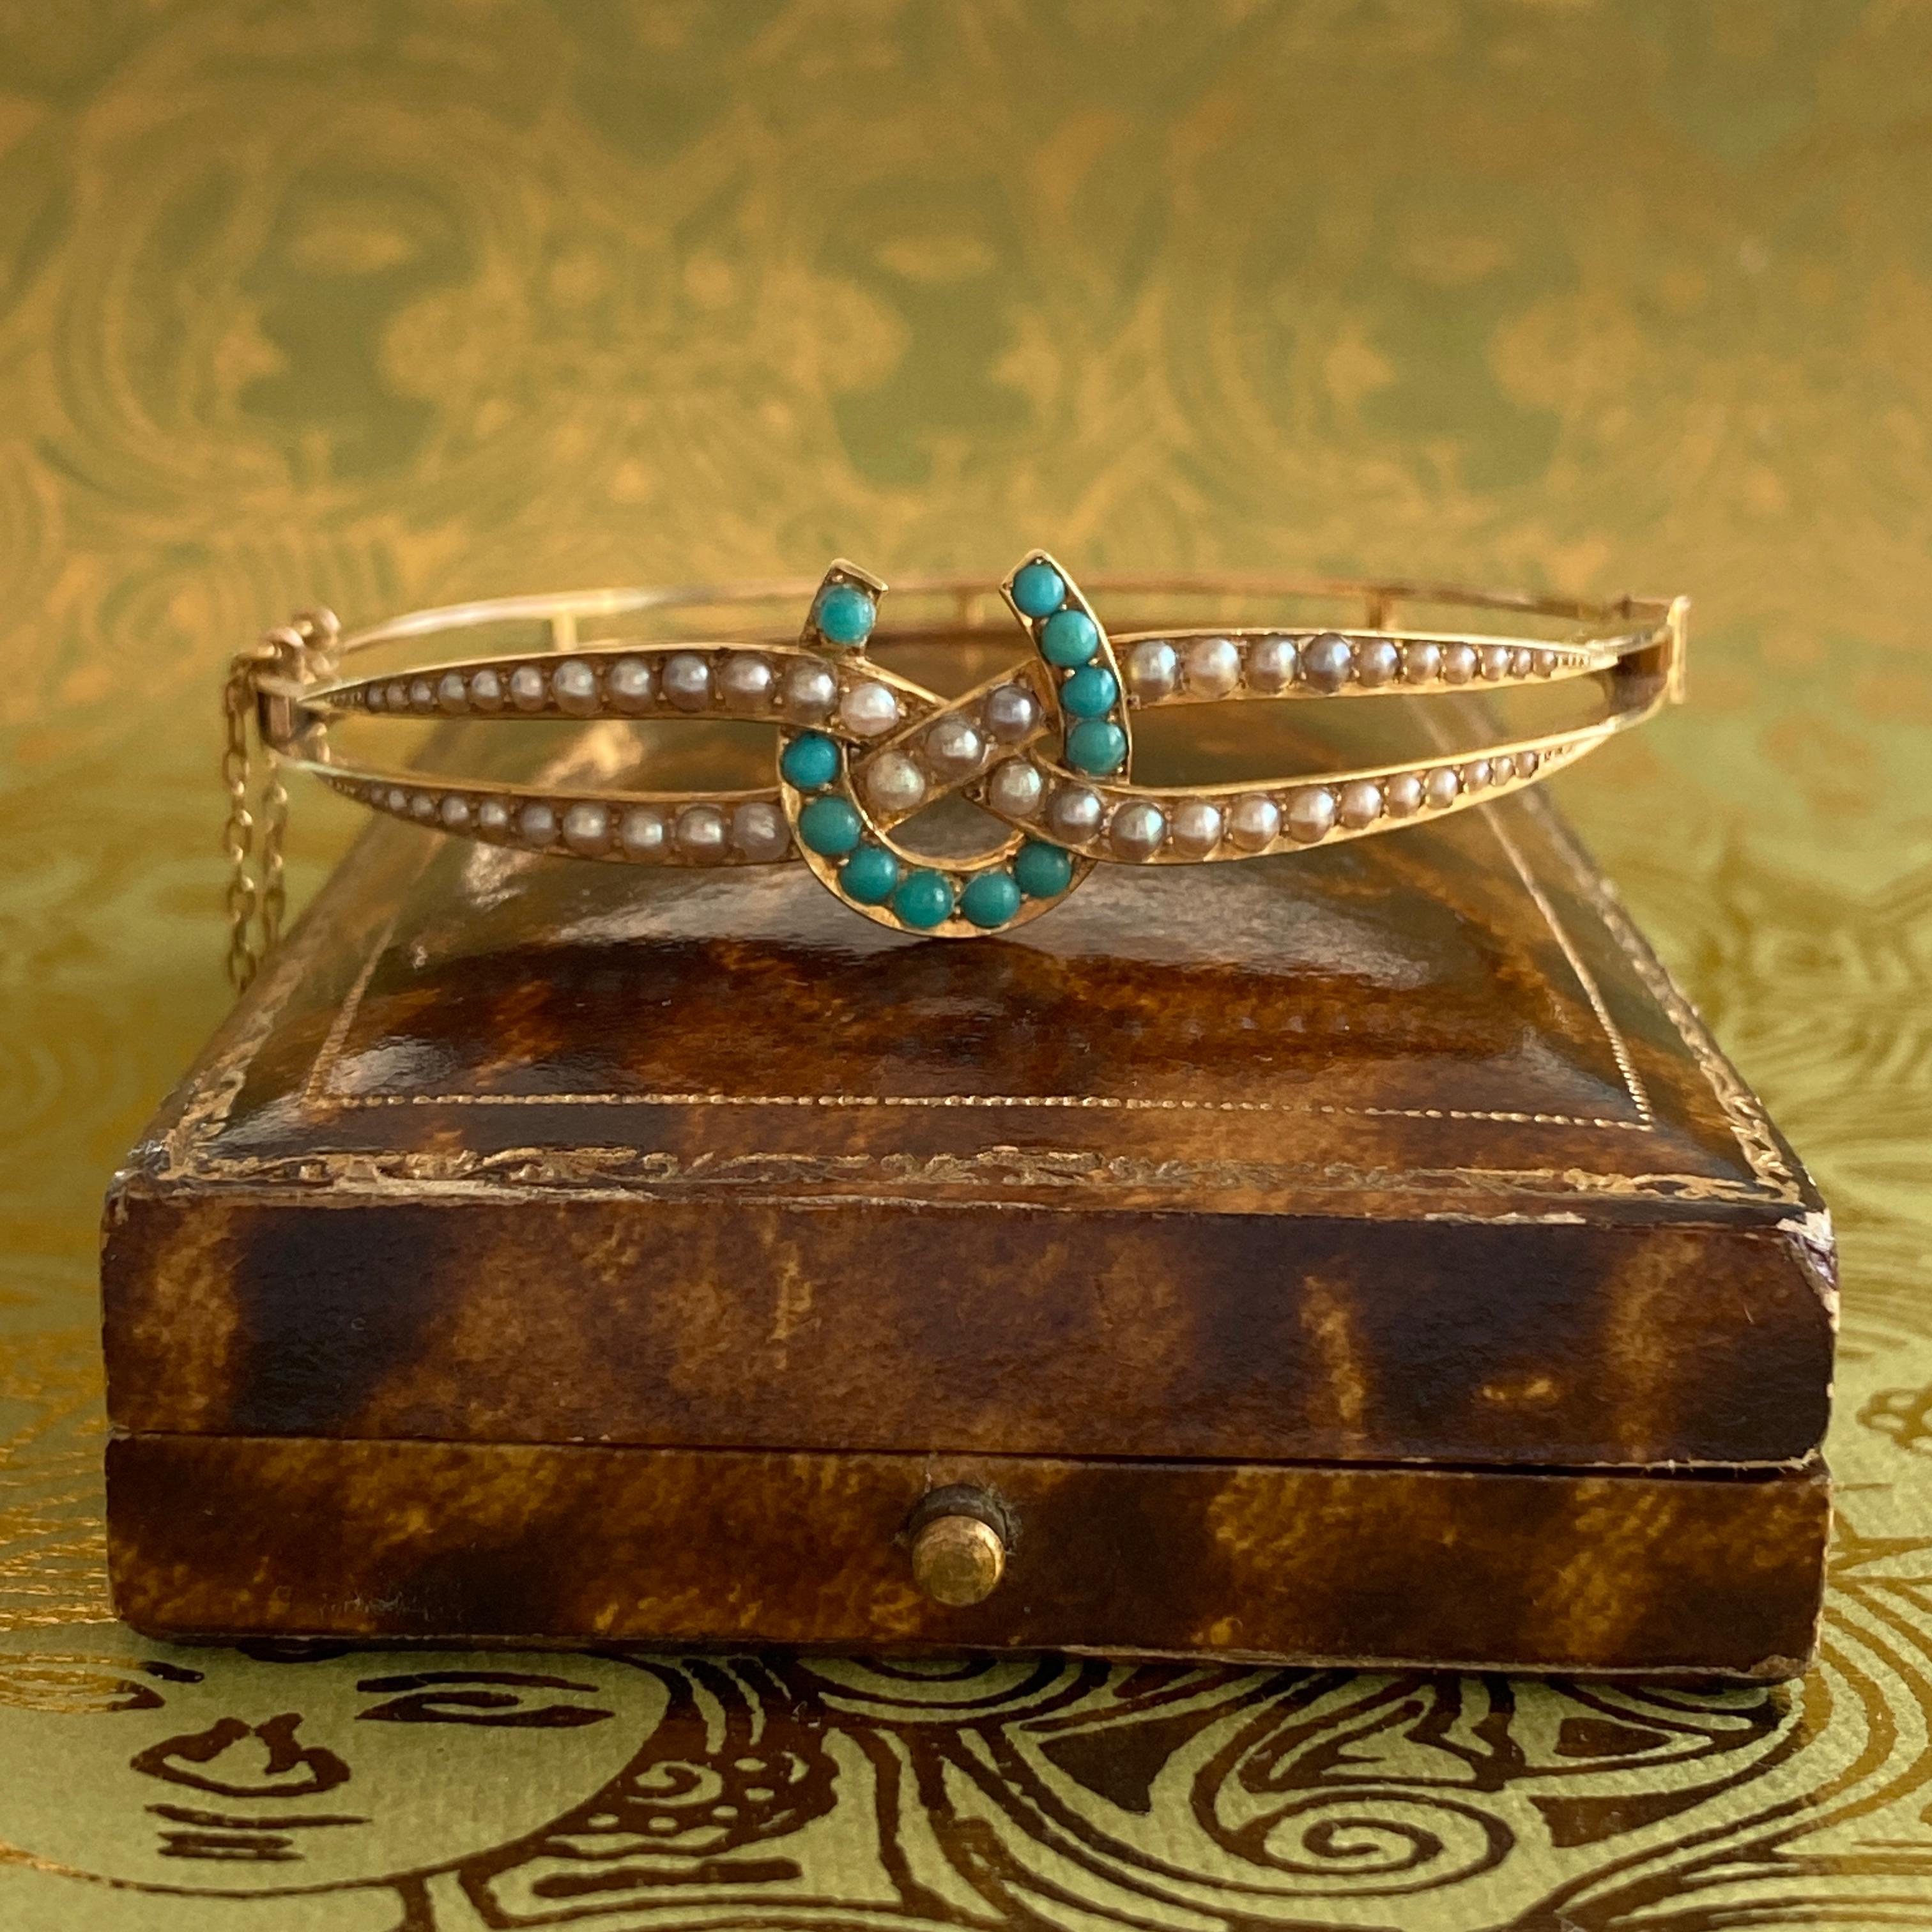 Einzelheiten:
Süßes viktorianisches Hufeisenarmband aus 14 Karat Gelbgold mit Reitermotiven. Hübsches, zartes Perlen- und Türkismuster auf der Vorderseite. Das Hufeisen ist mit Türkisen verziert und das umgebende Armband ist mit Saatperlen übersät.